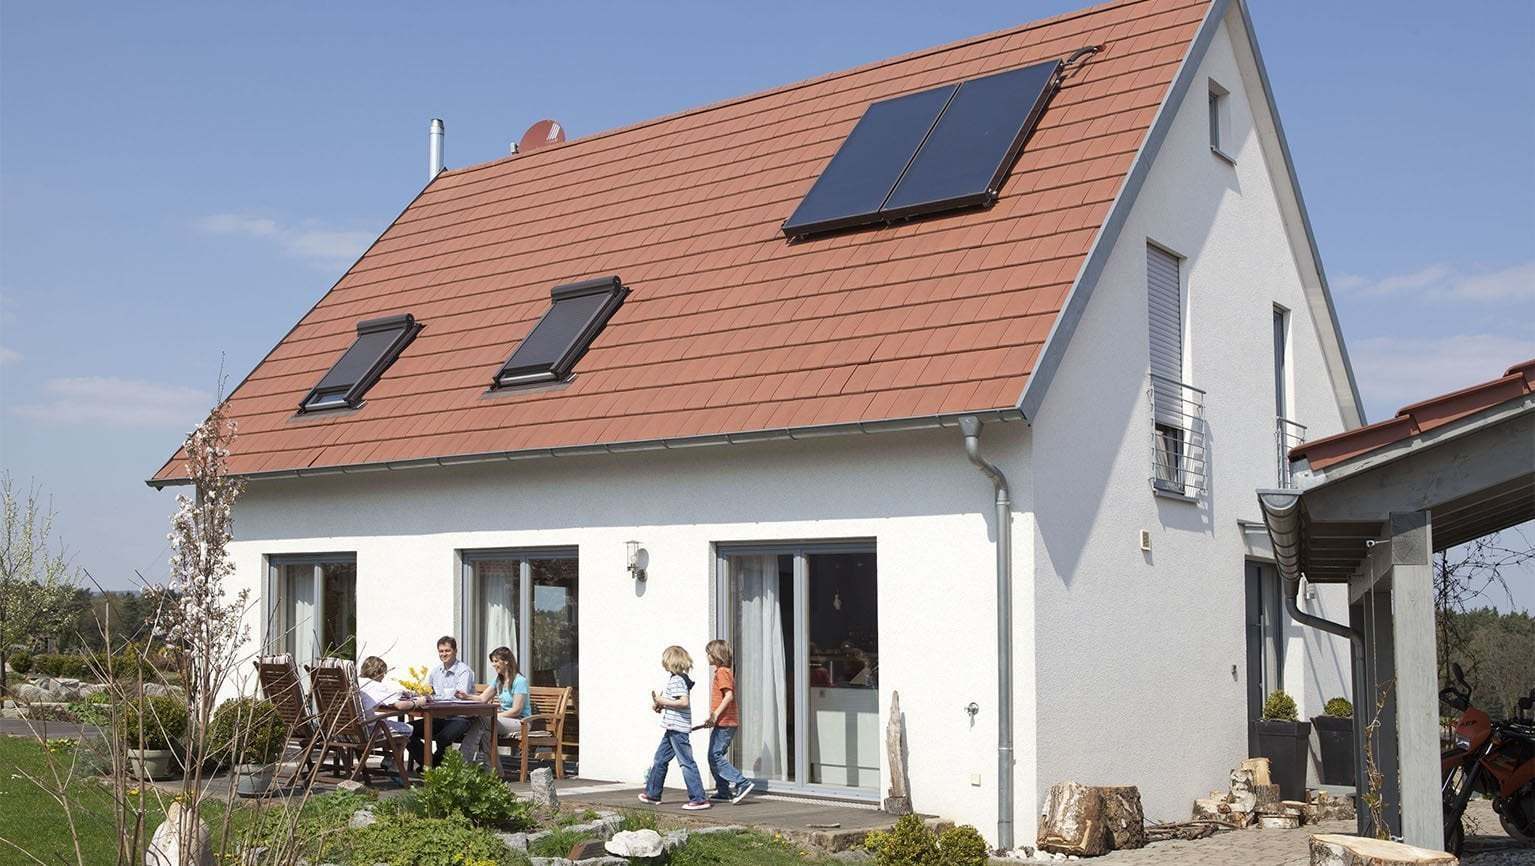 Vor einem Einfamilienhaus mit einer Photovoltaik-Anlage sitzt eine Familie an einem Tisch auf der Terrasse.